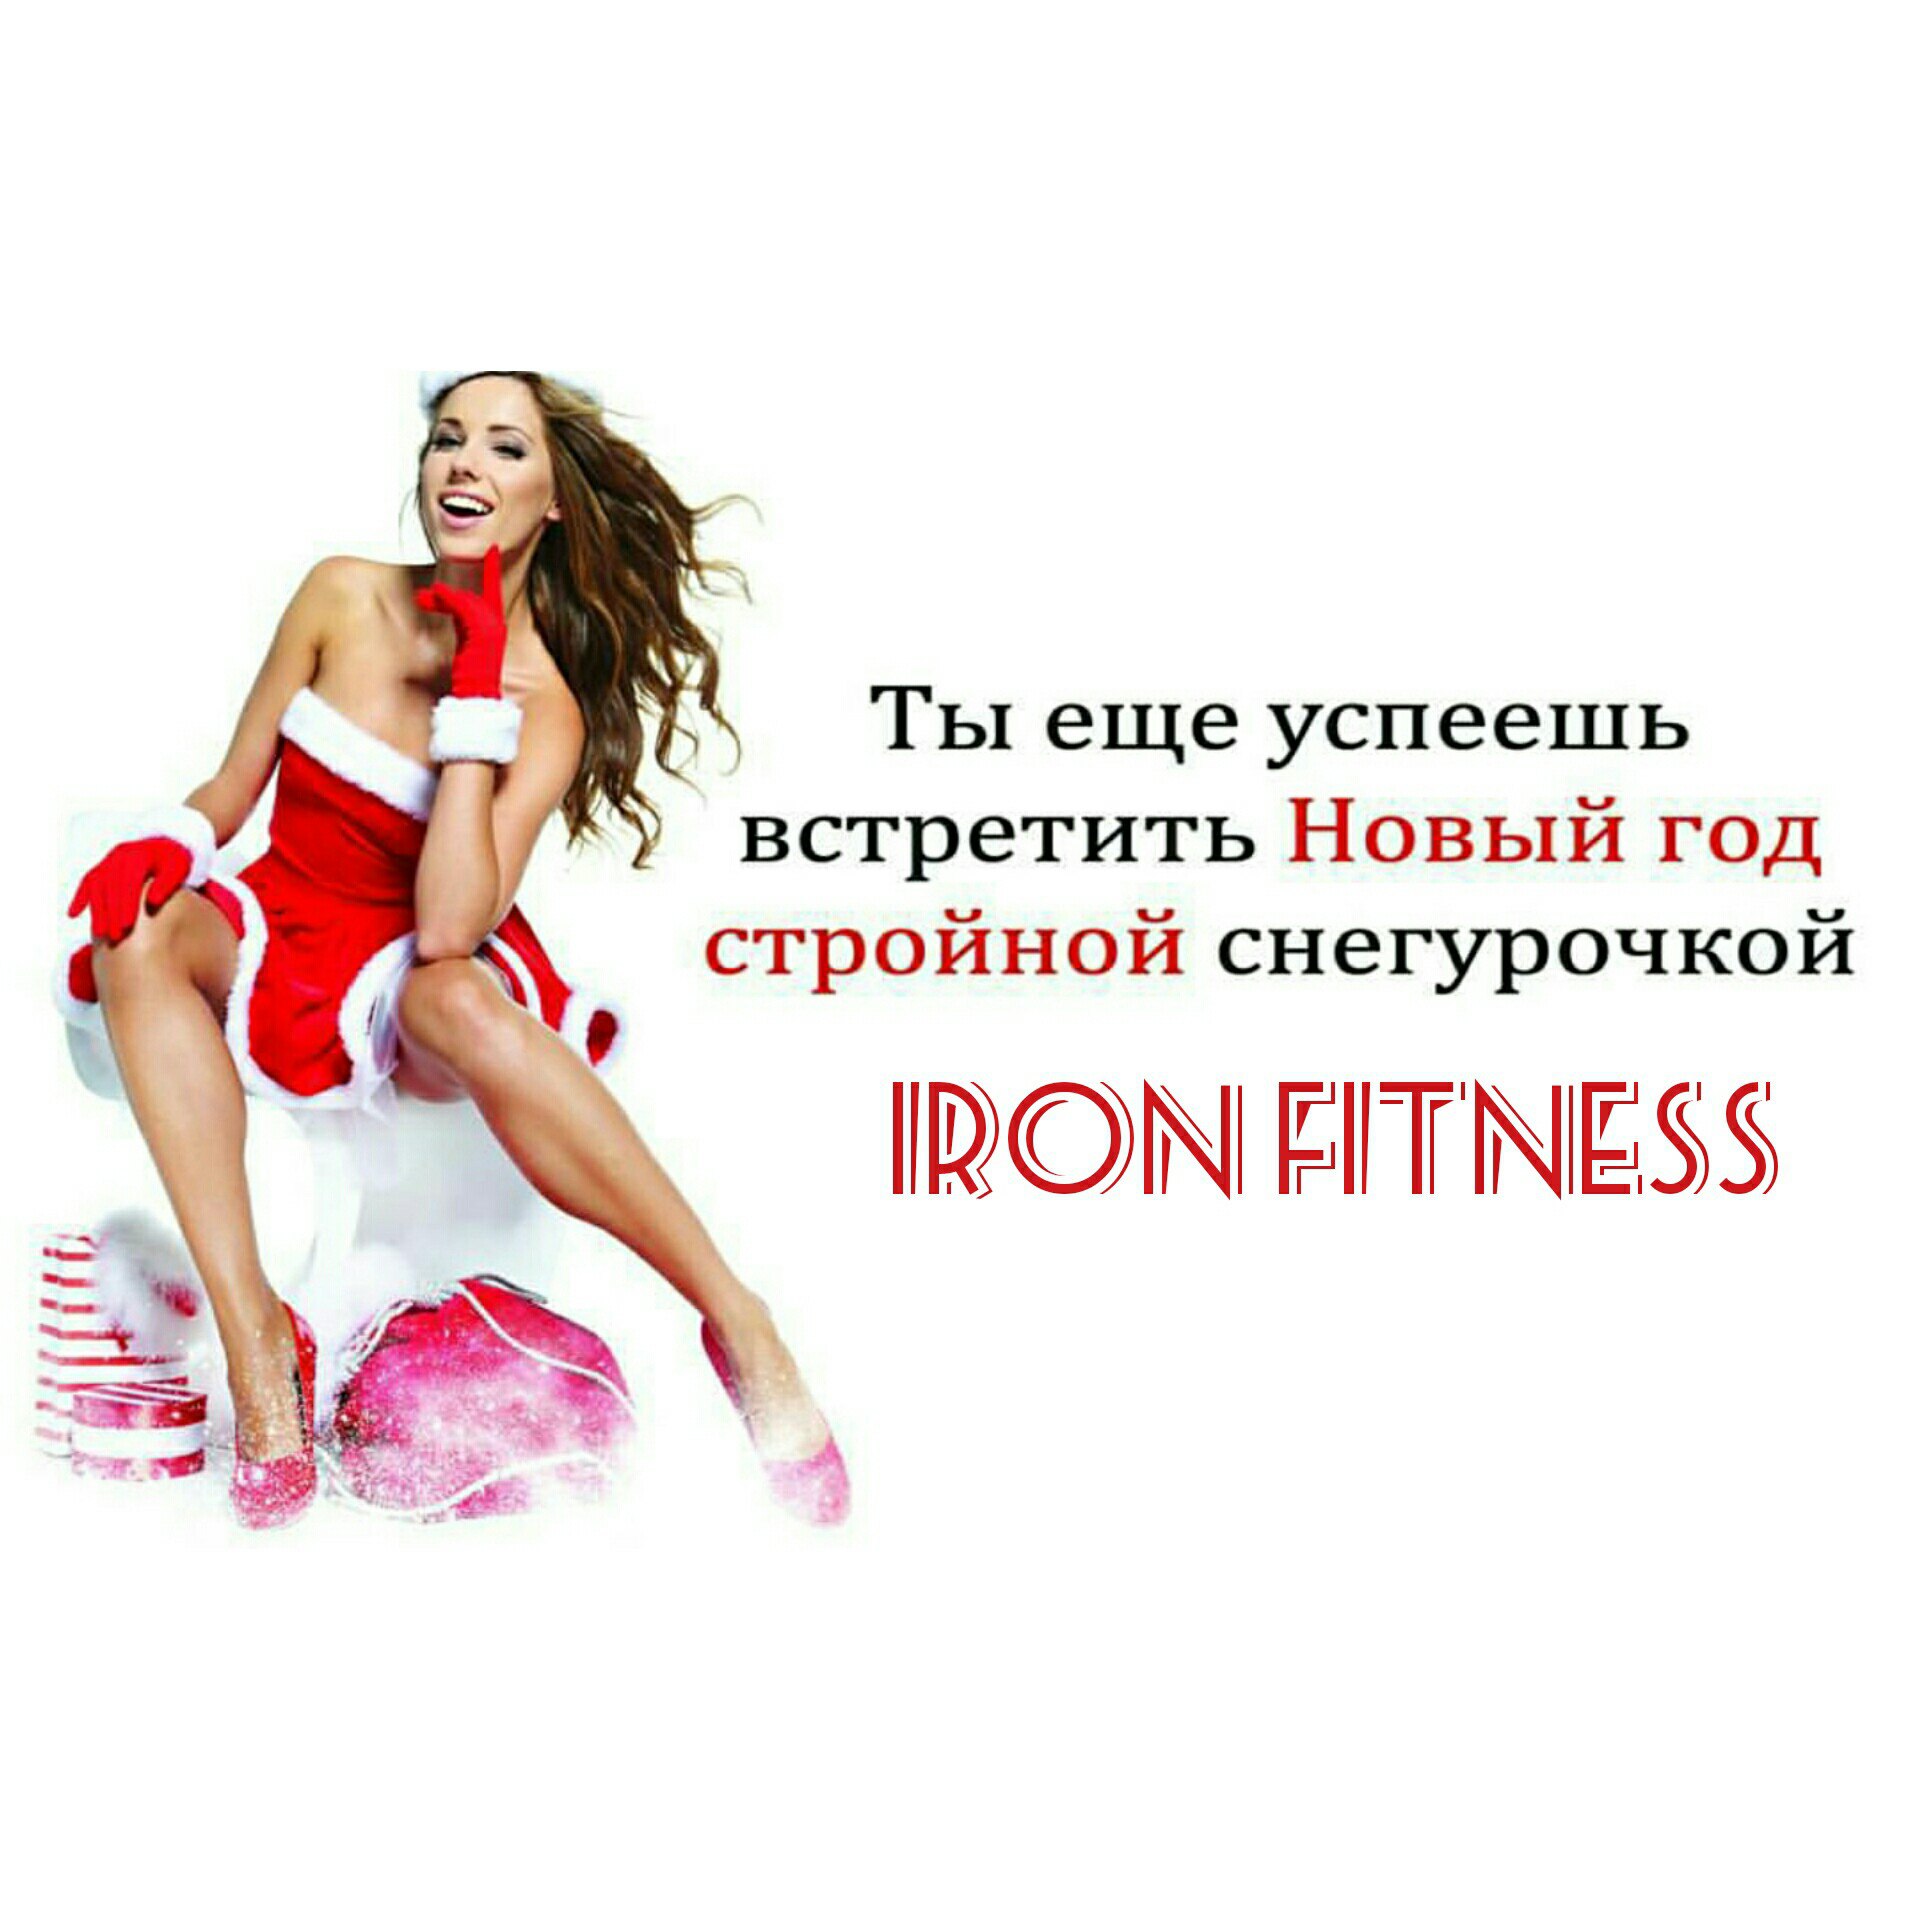 Сеть фитнес клубов "Iron Fitness" Долгопрудный - телефон, адрес, отзывы, контакты